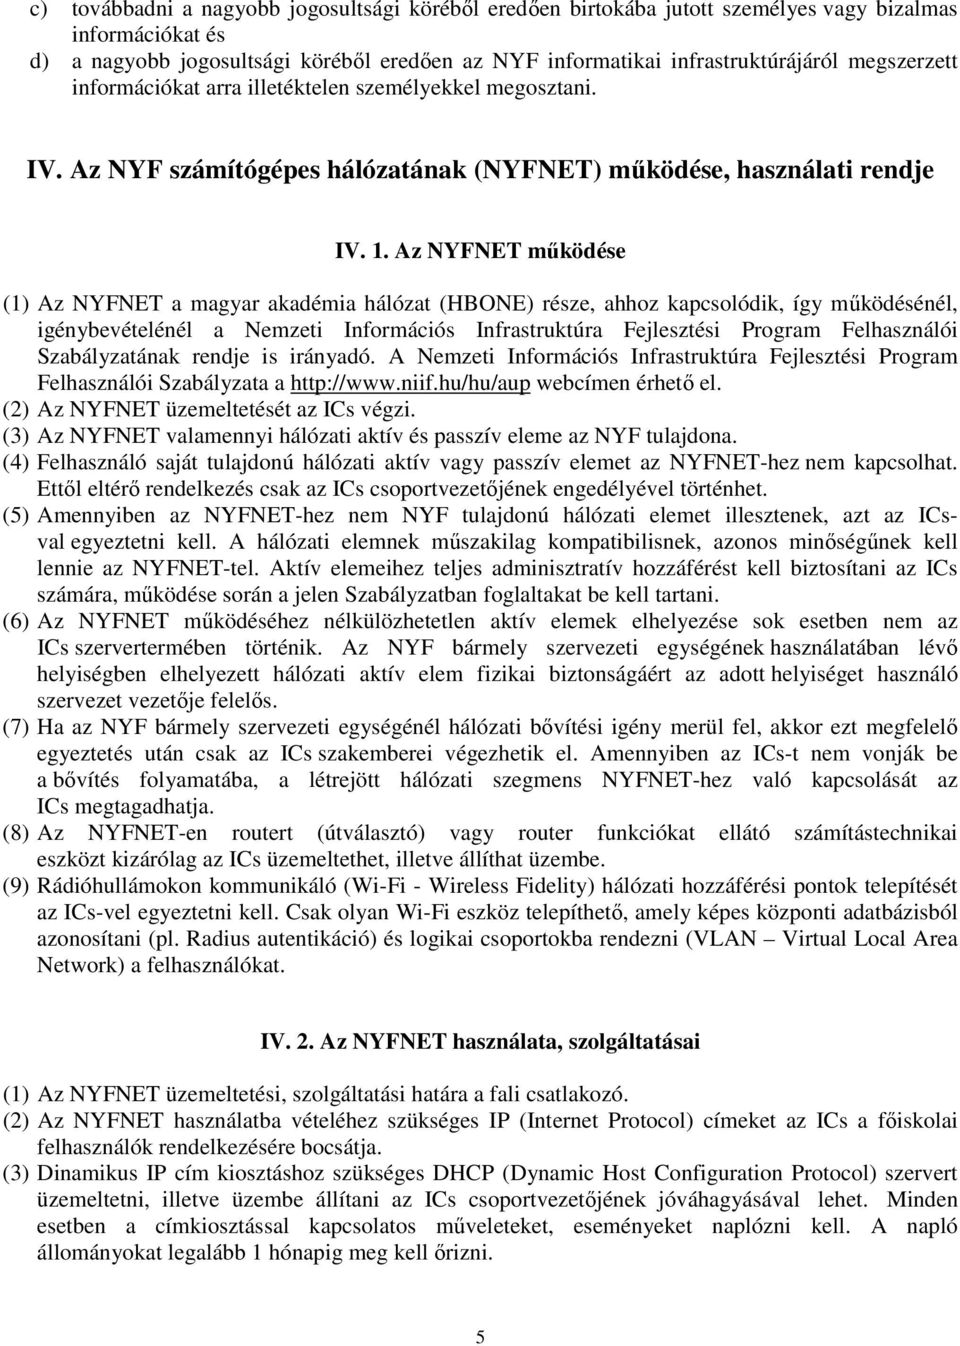 Az NYFNET működése (1) Az NYFNET a magyar akadémia hálózat (HBONE) része, ahhoz kapcsolódik, így működésénél, igénybevételénél a Nemzeti Információs Infrastruktúra Fejlesztési Program Felhasználói